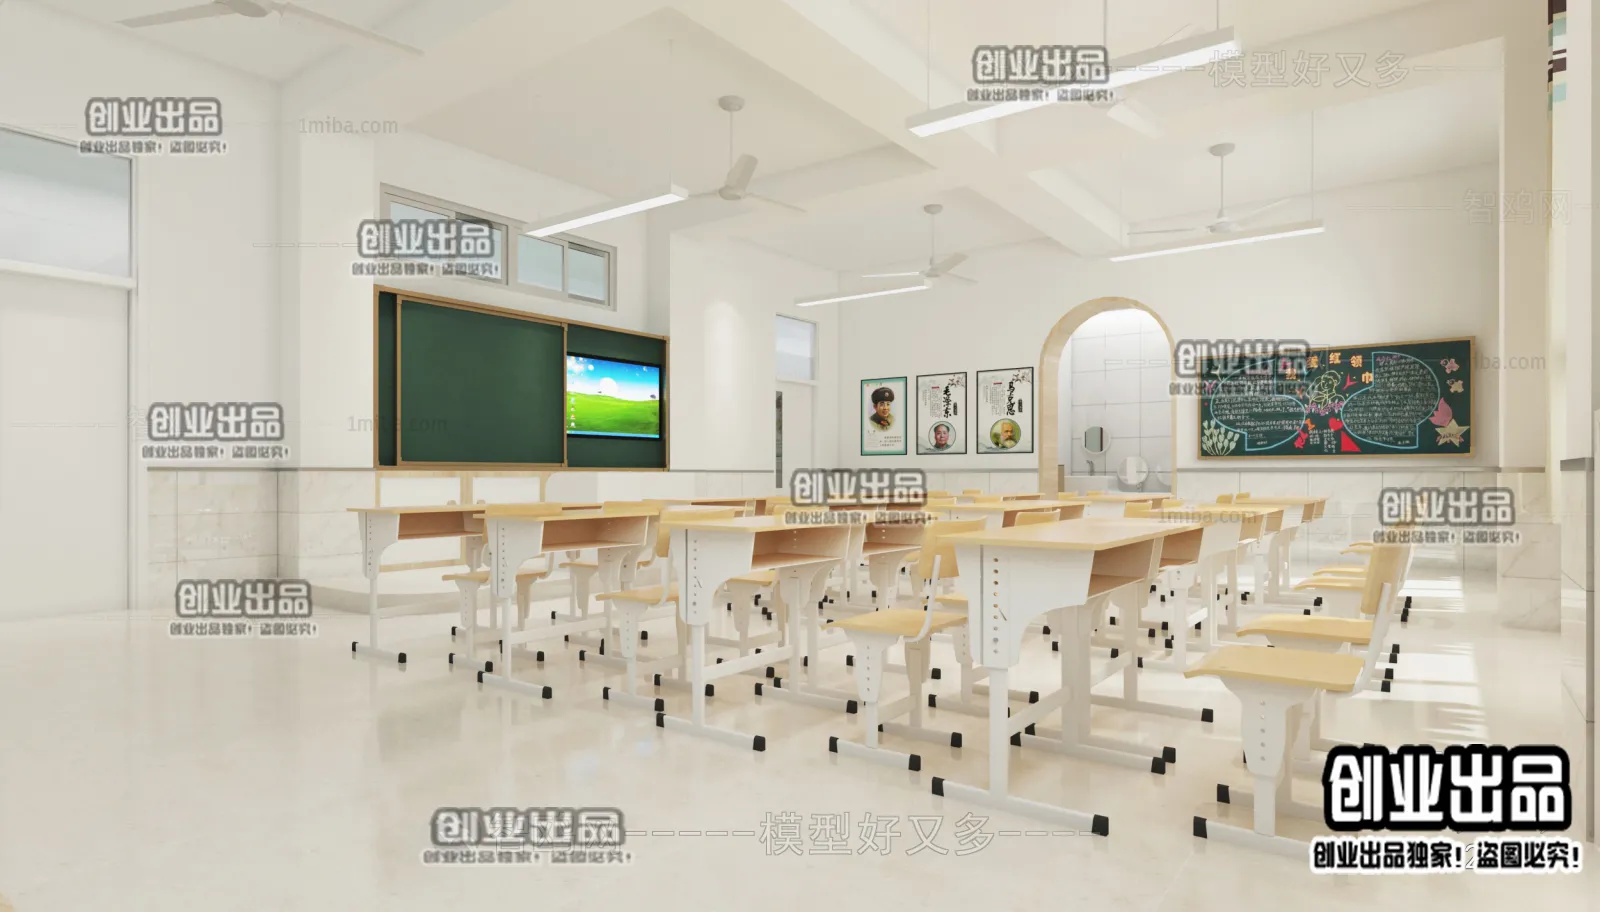 3D SCHOOL INTERIOR (VRAY) – CLASSROOM 3D SCENES – 020